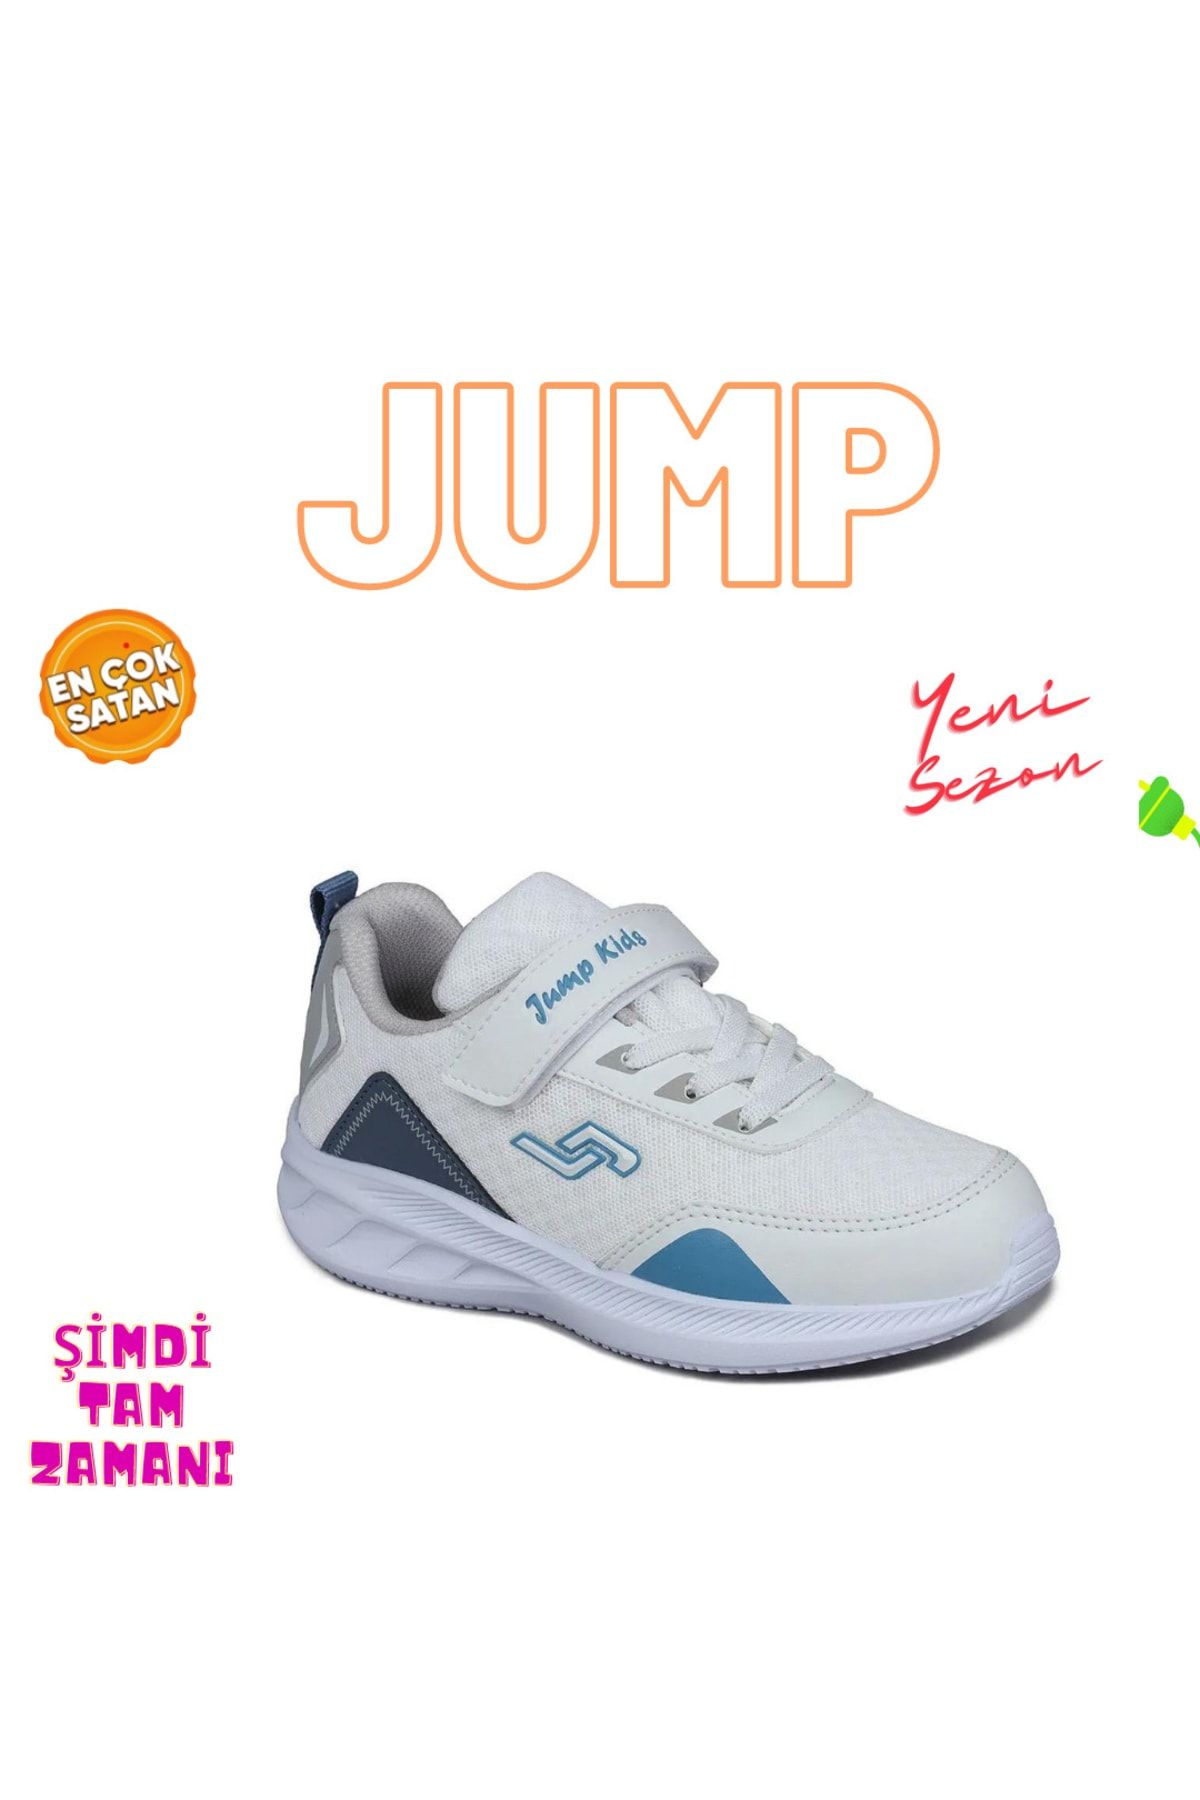 Jump 28110 Çocuk Yazlık Sneaker Günlük Rahat Spor Ayakkabı Yeni Sezon